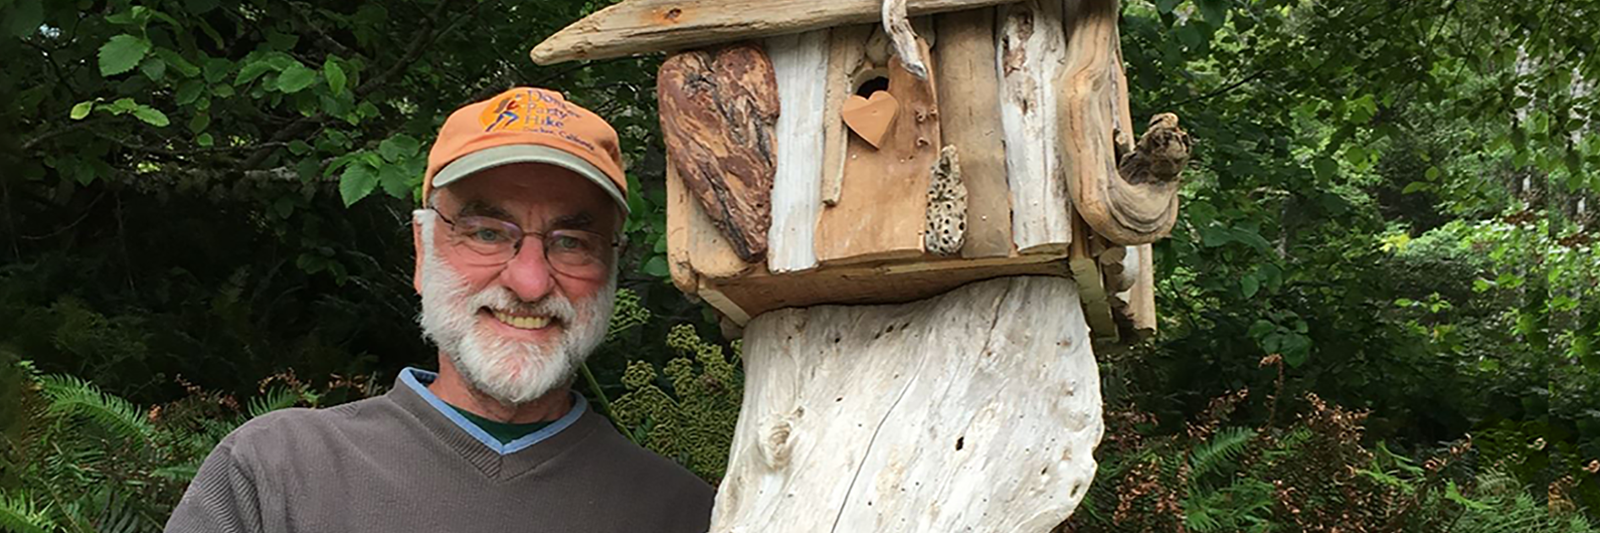 Driftwood Birdhouses - A little bird told me - Dean Shrock